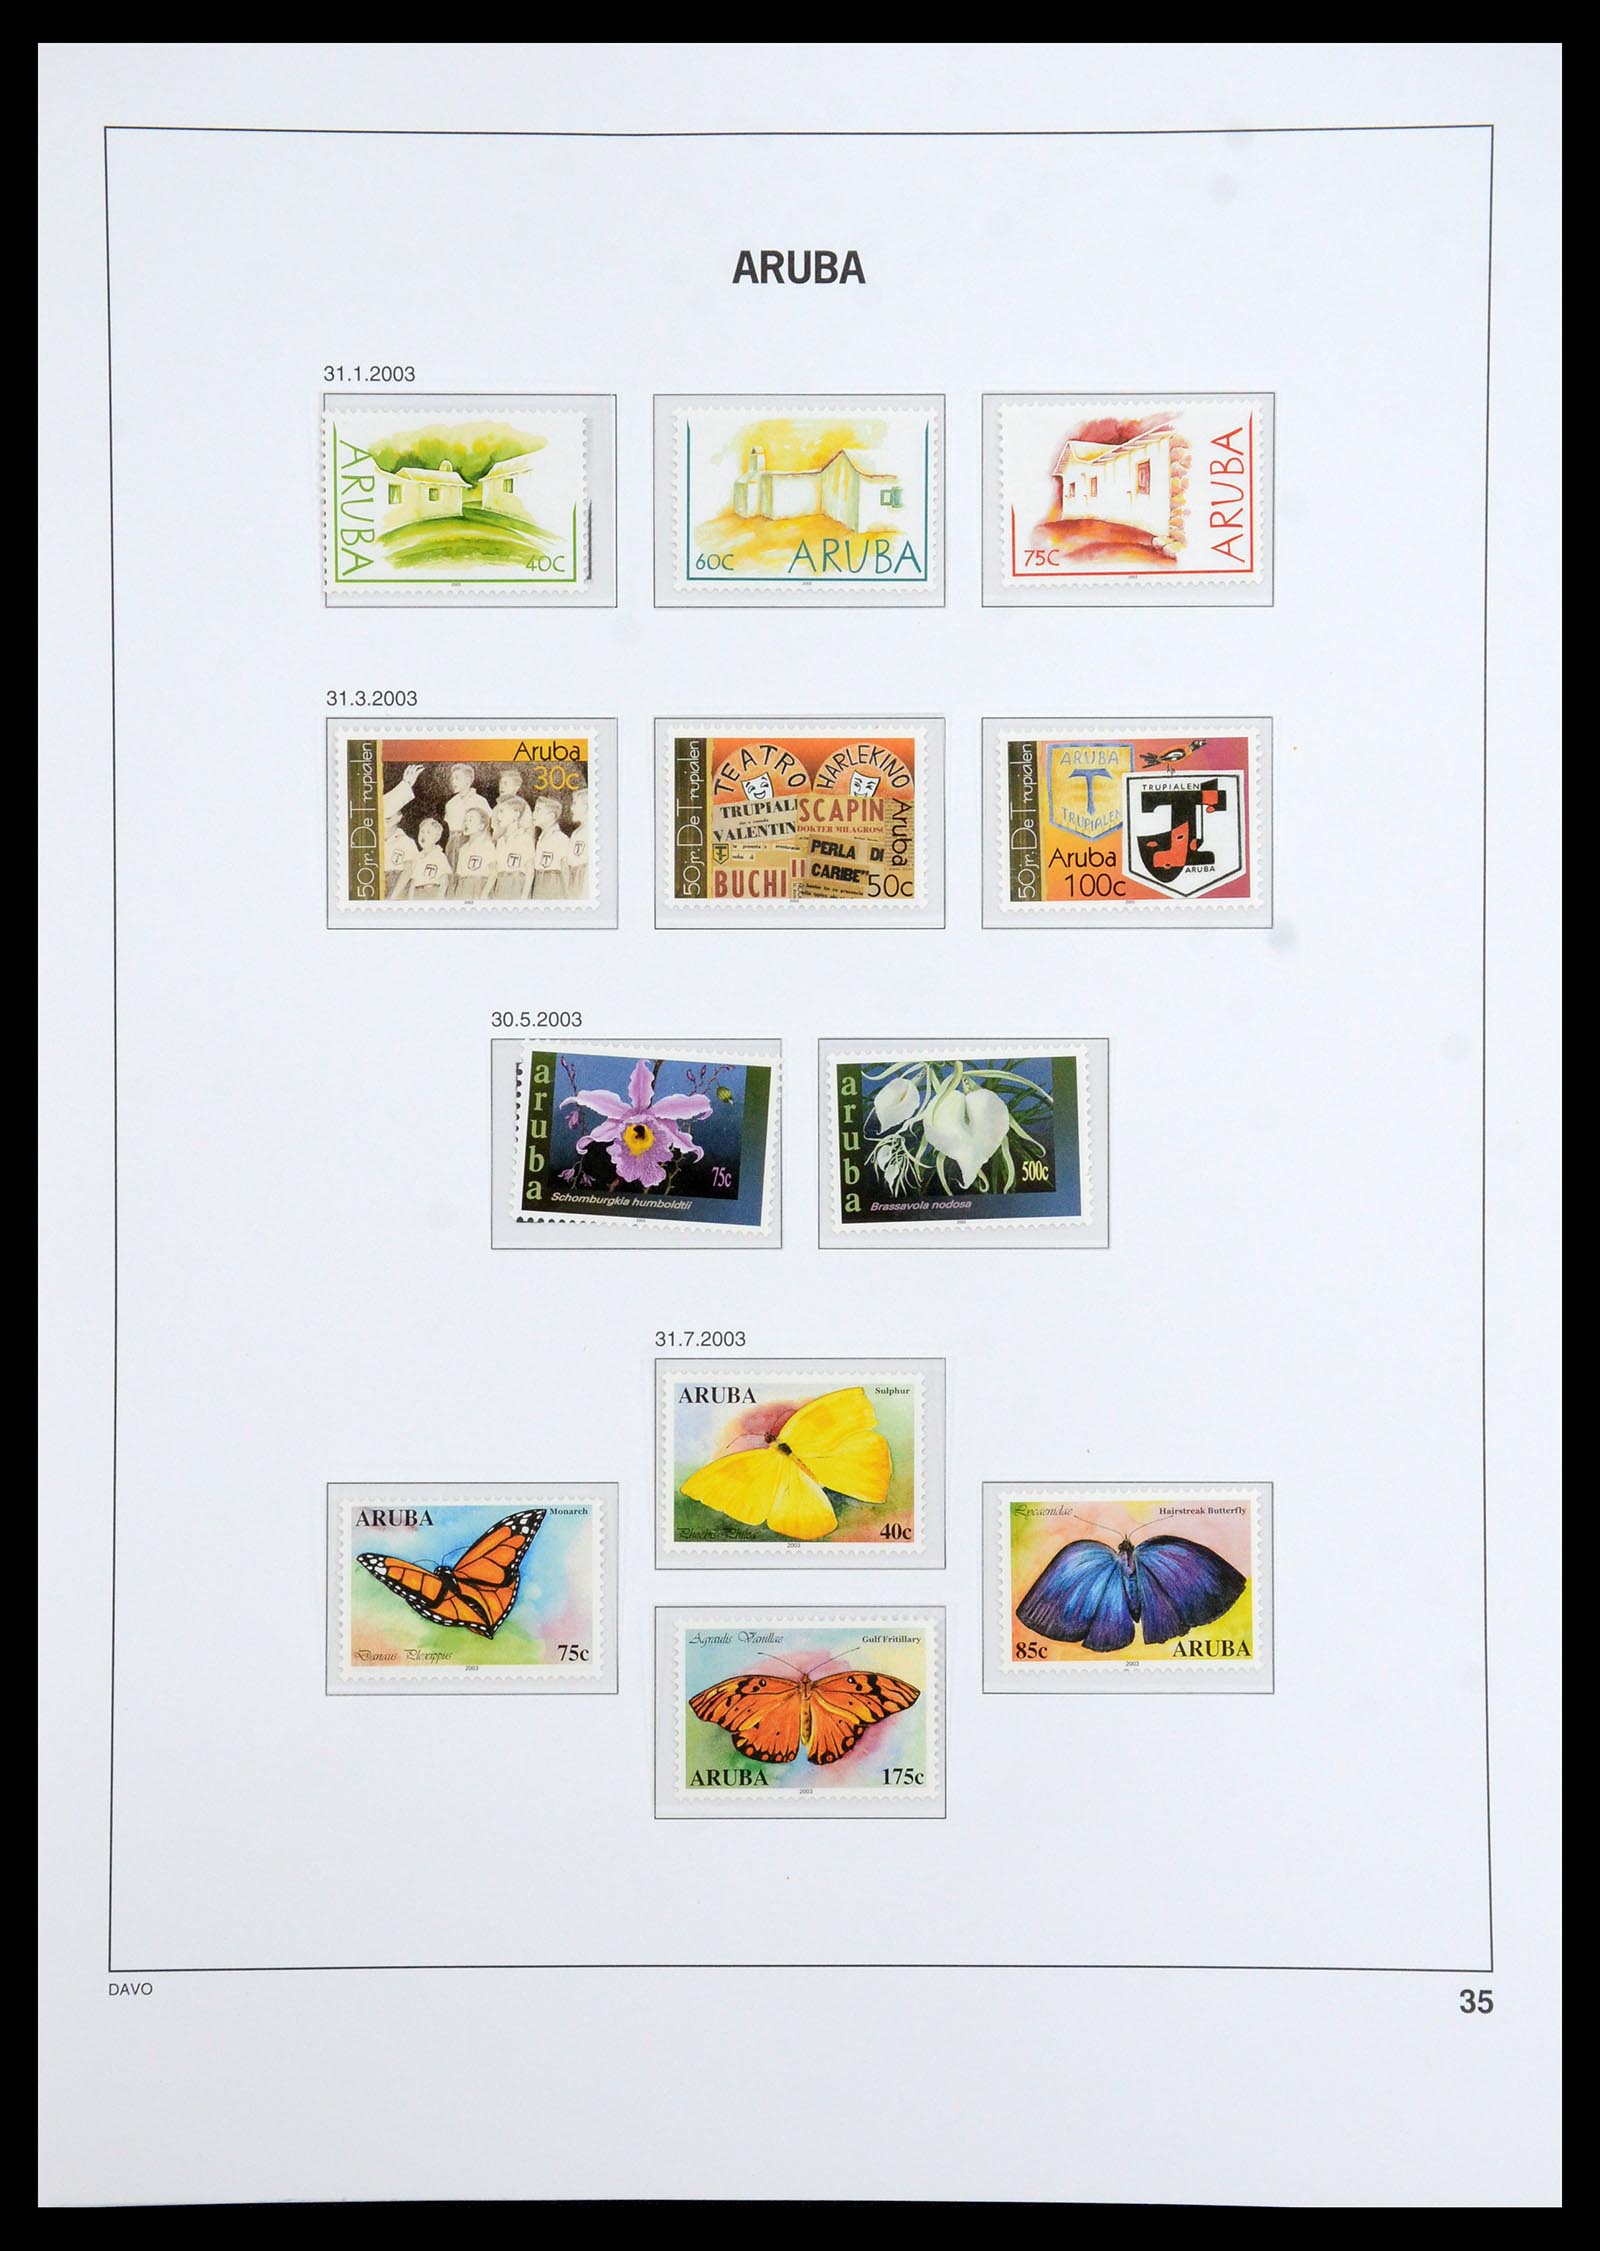 36369 037 - Stamp collection 36369 Aruba 1986-2009.